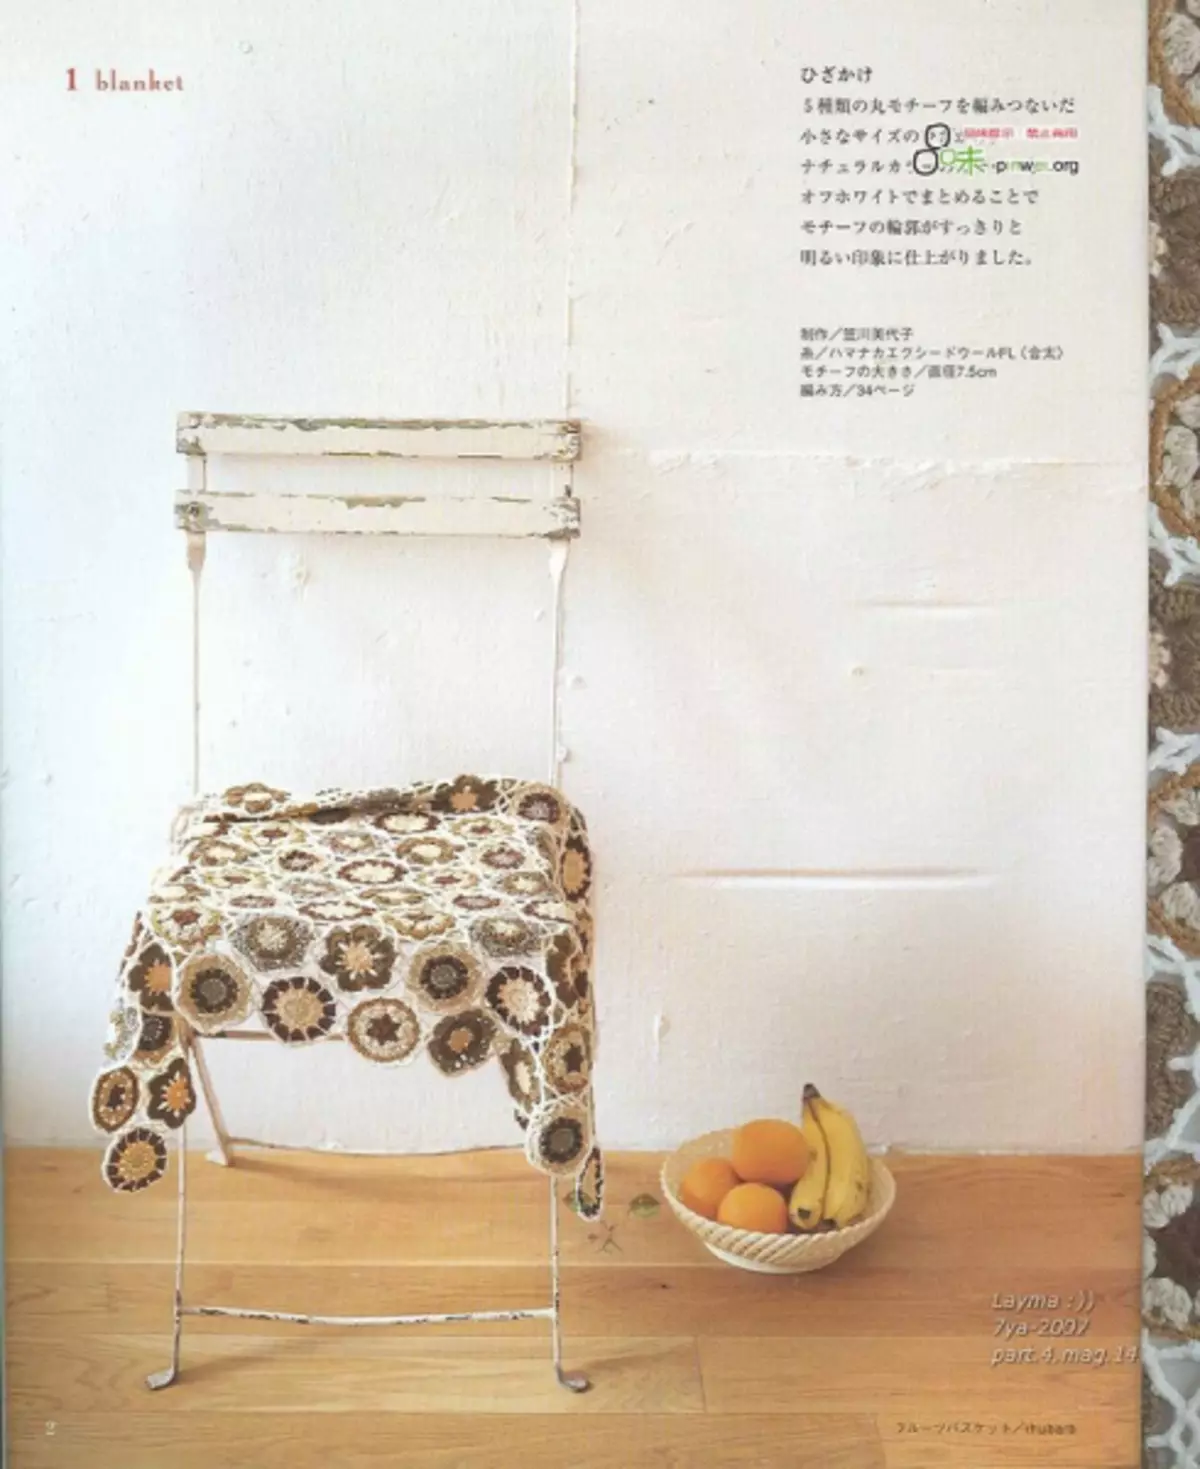 ถัก. นิตยสารญี่ปุ่น